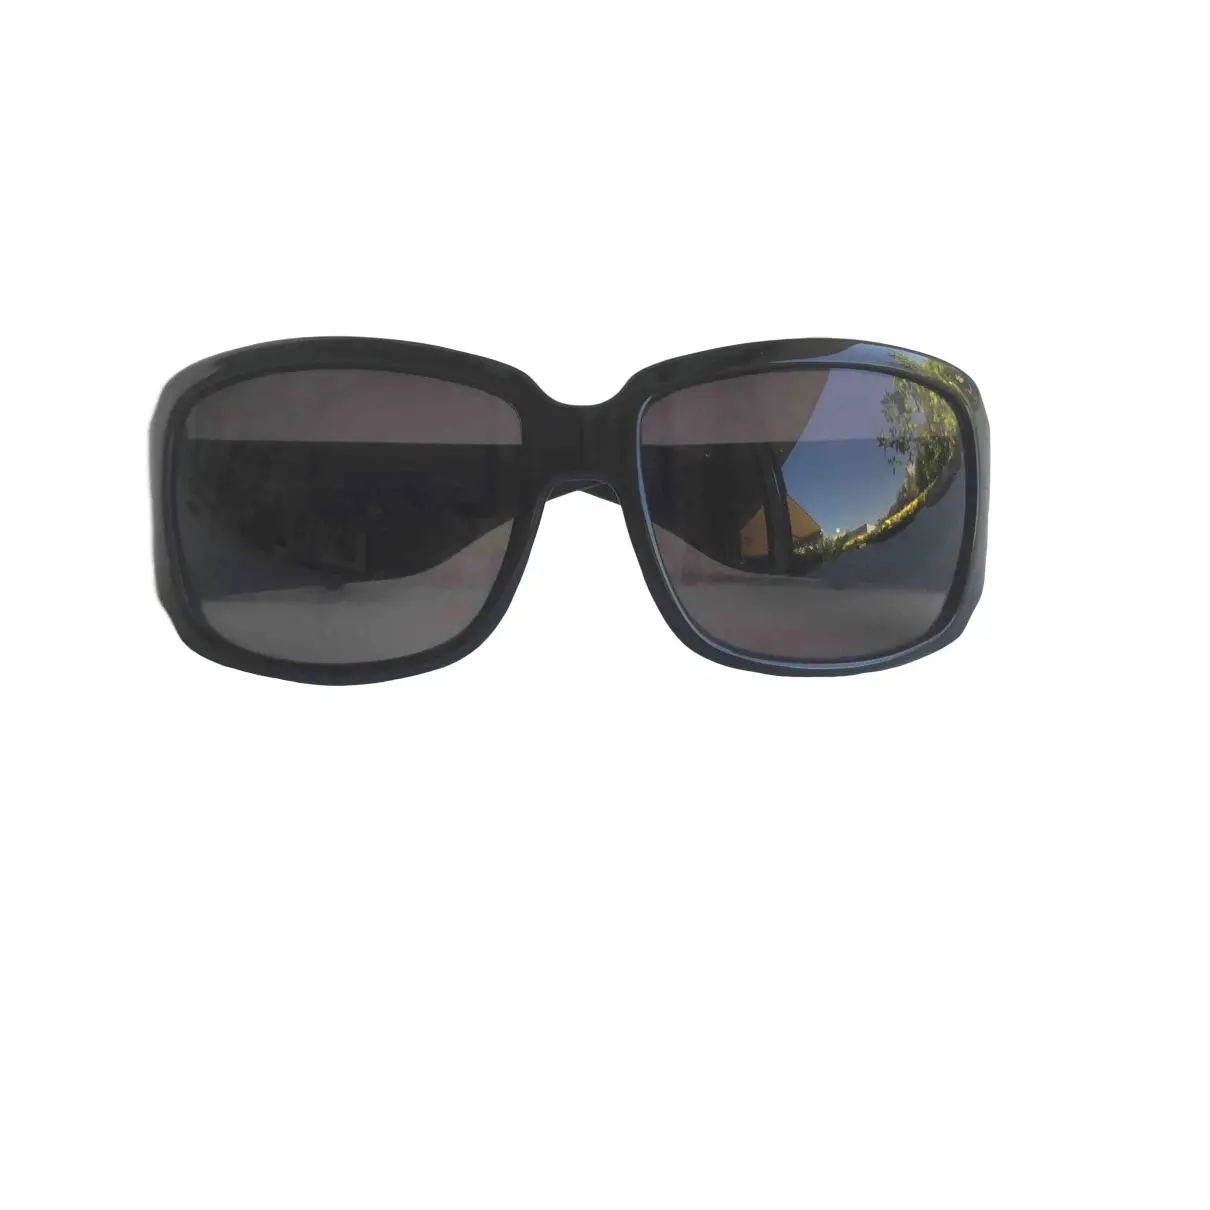 Oversized sunglasses Fendissime - Vintage